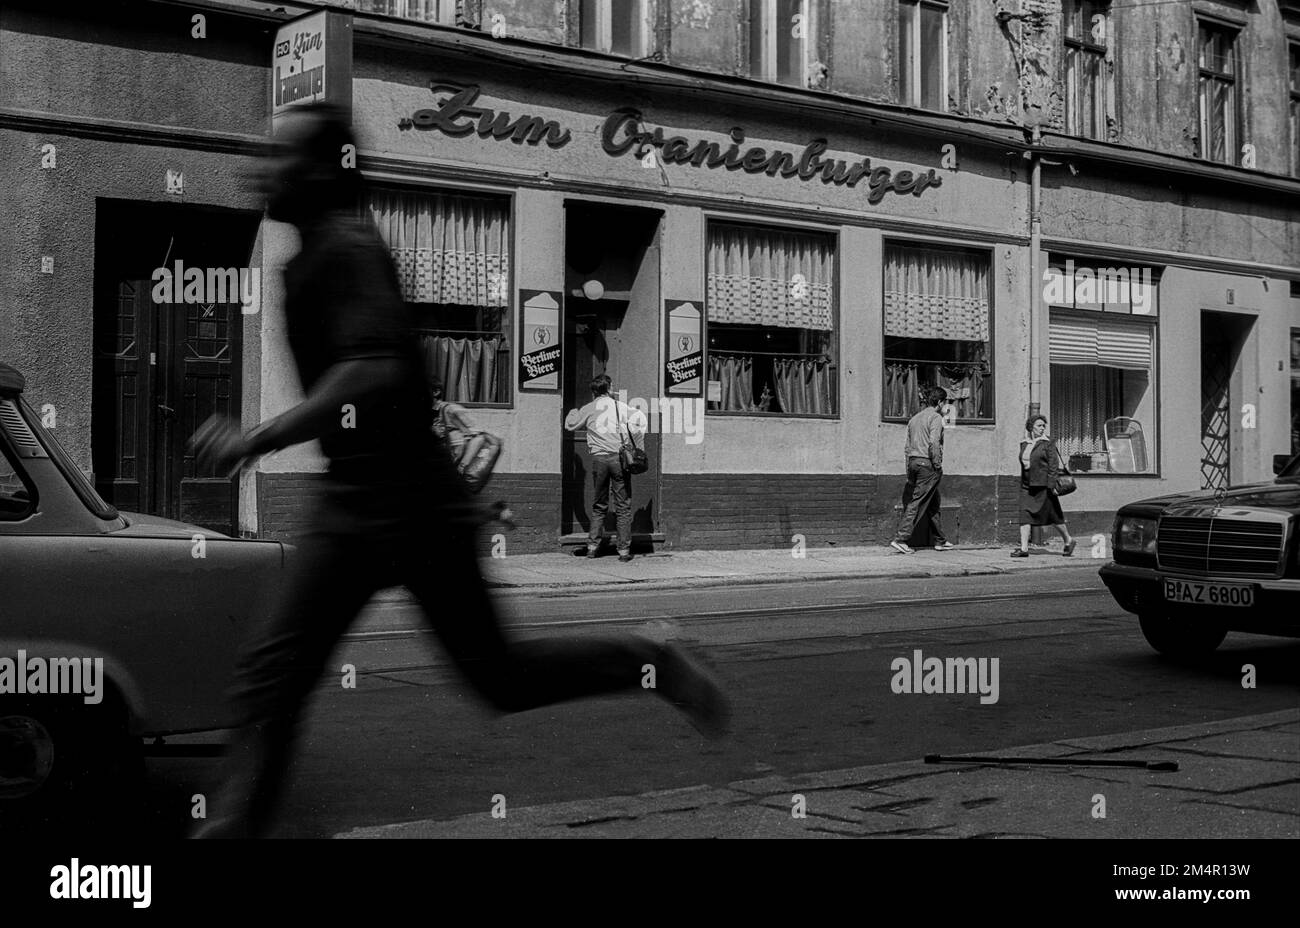 GDR, Berlin, 23. 05. 1989, Oranienburger Strasse, pub: Zum Oranienburger, running man Stock Photo